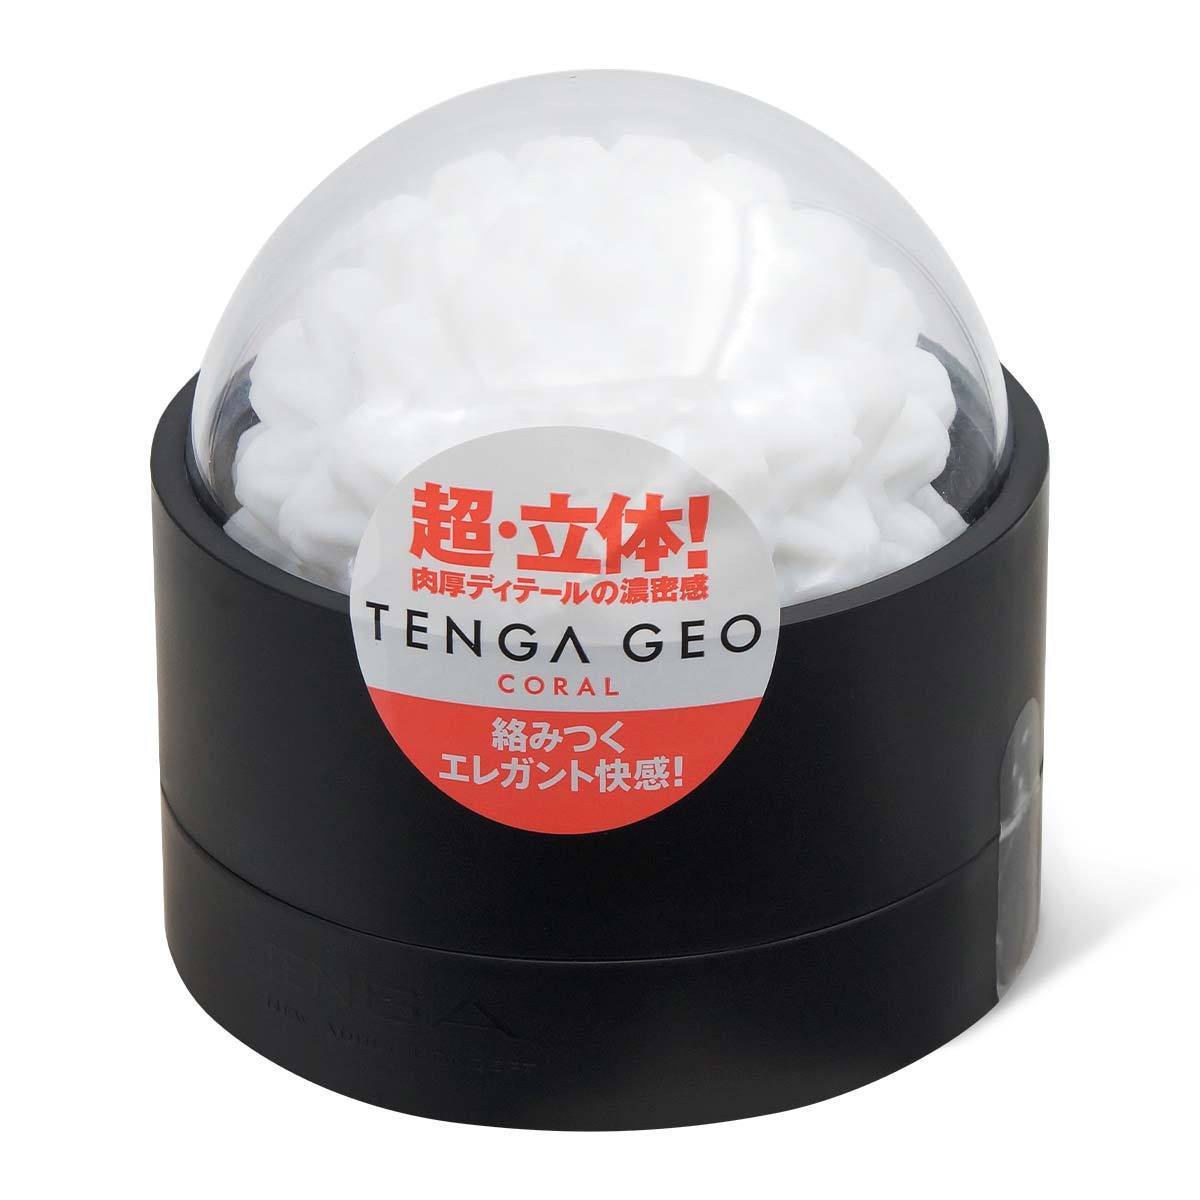 TENGA GEO 全系列完全組合-TENGA-TENGA 香港網上專門店 - 專營 TENGA 飛機杯及潤滑劑